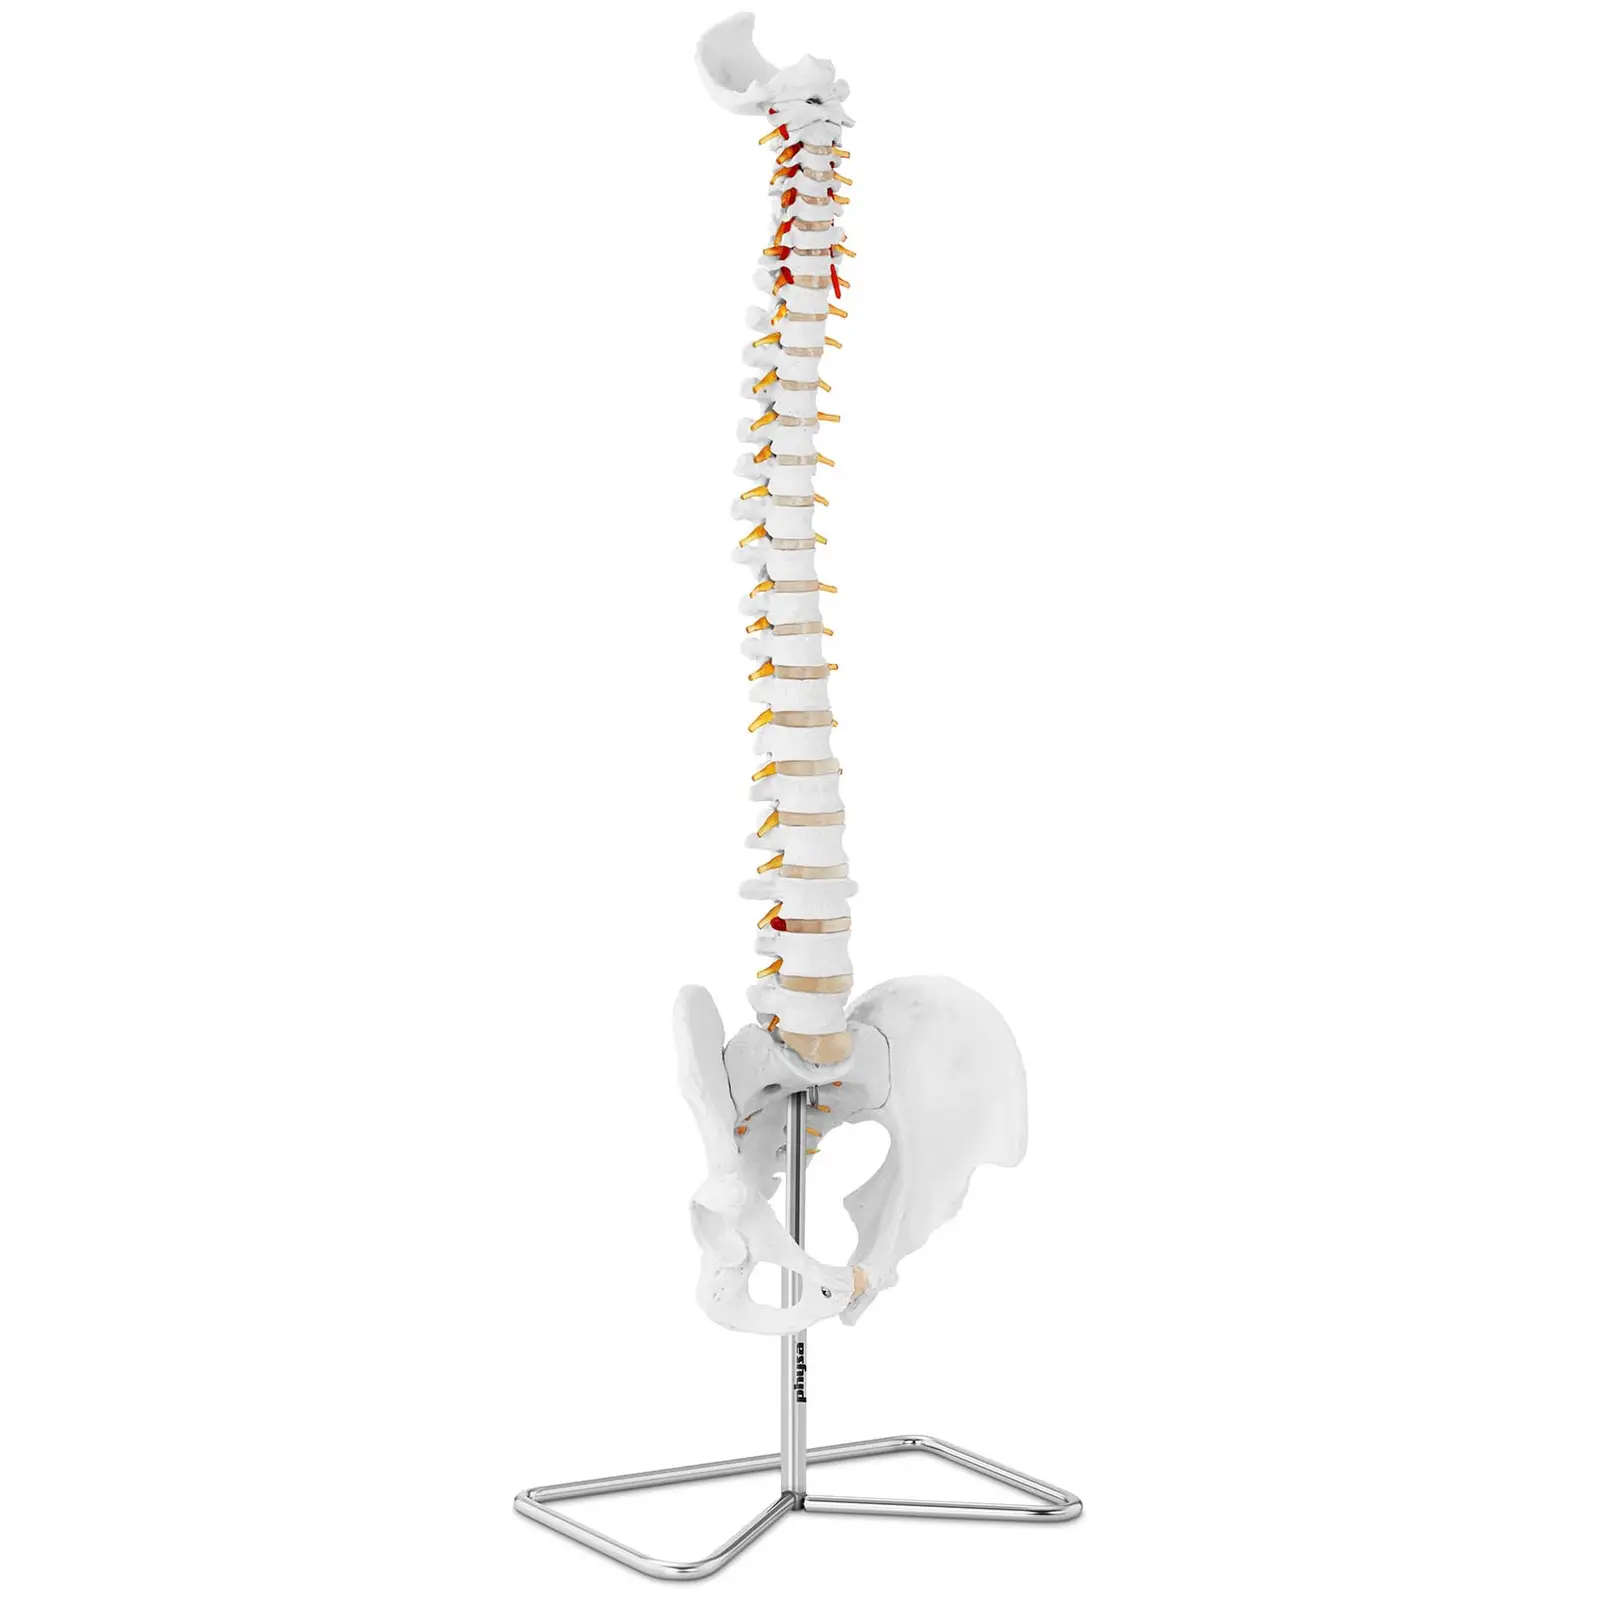 Ryggsøyle med bekken – Anatomisk modell 